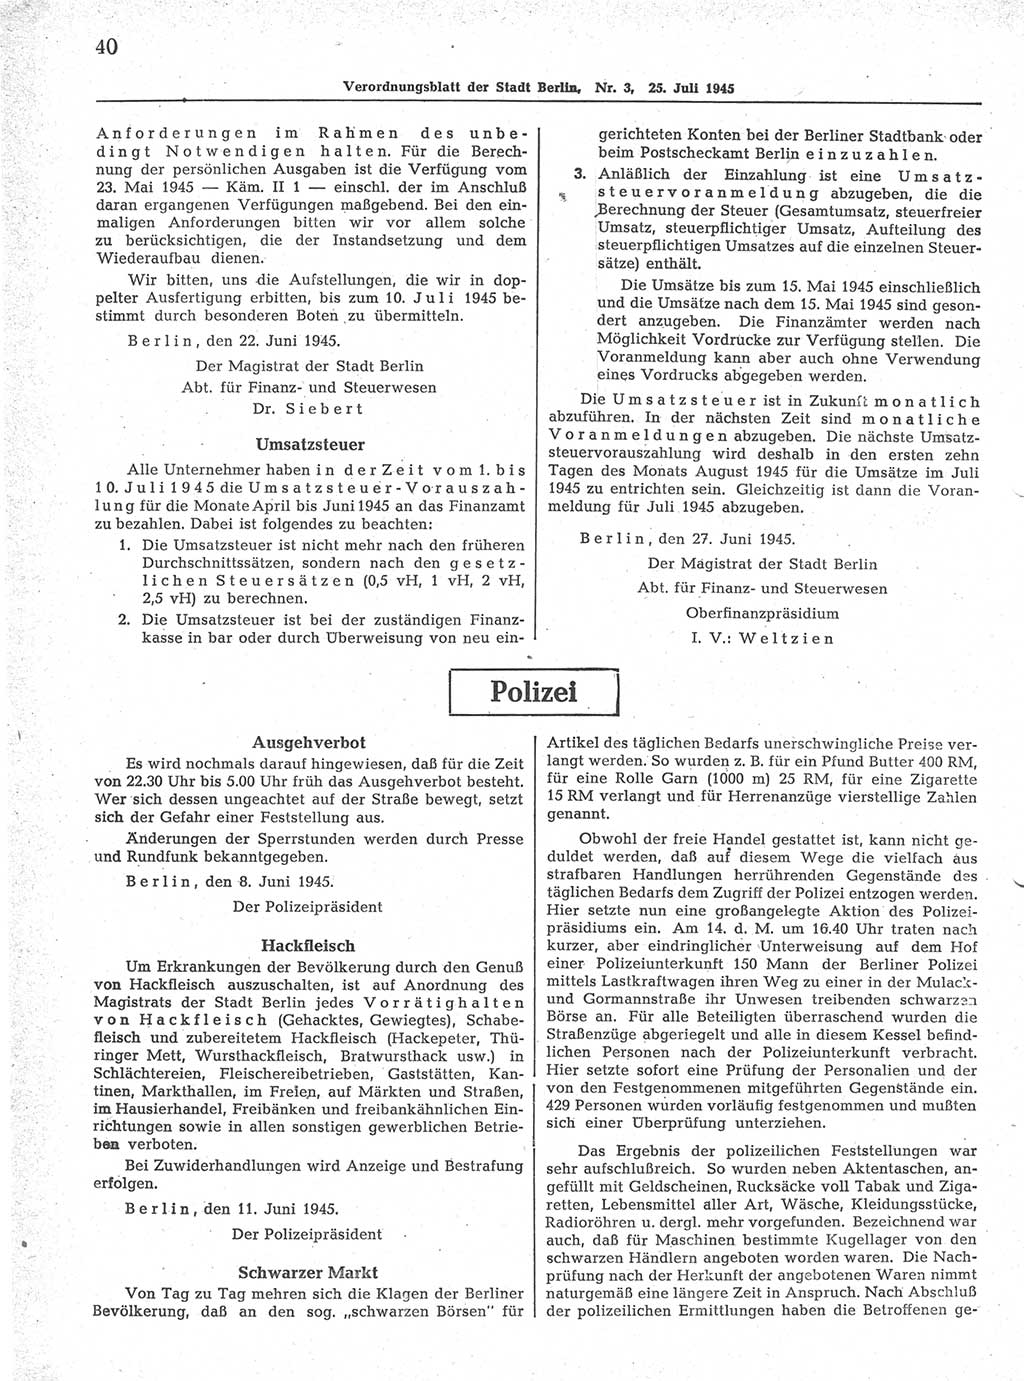 Verordnungsblatt (VOBl.) der Stadt Berlin 1945, Seite 40 (VOBl. Bln. 1945, S. 40)